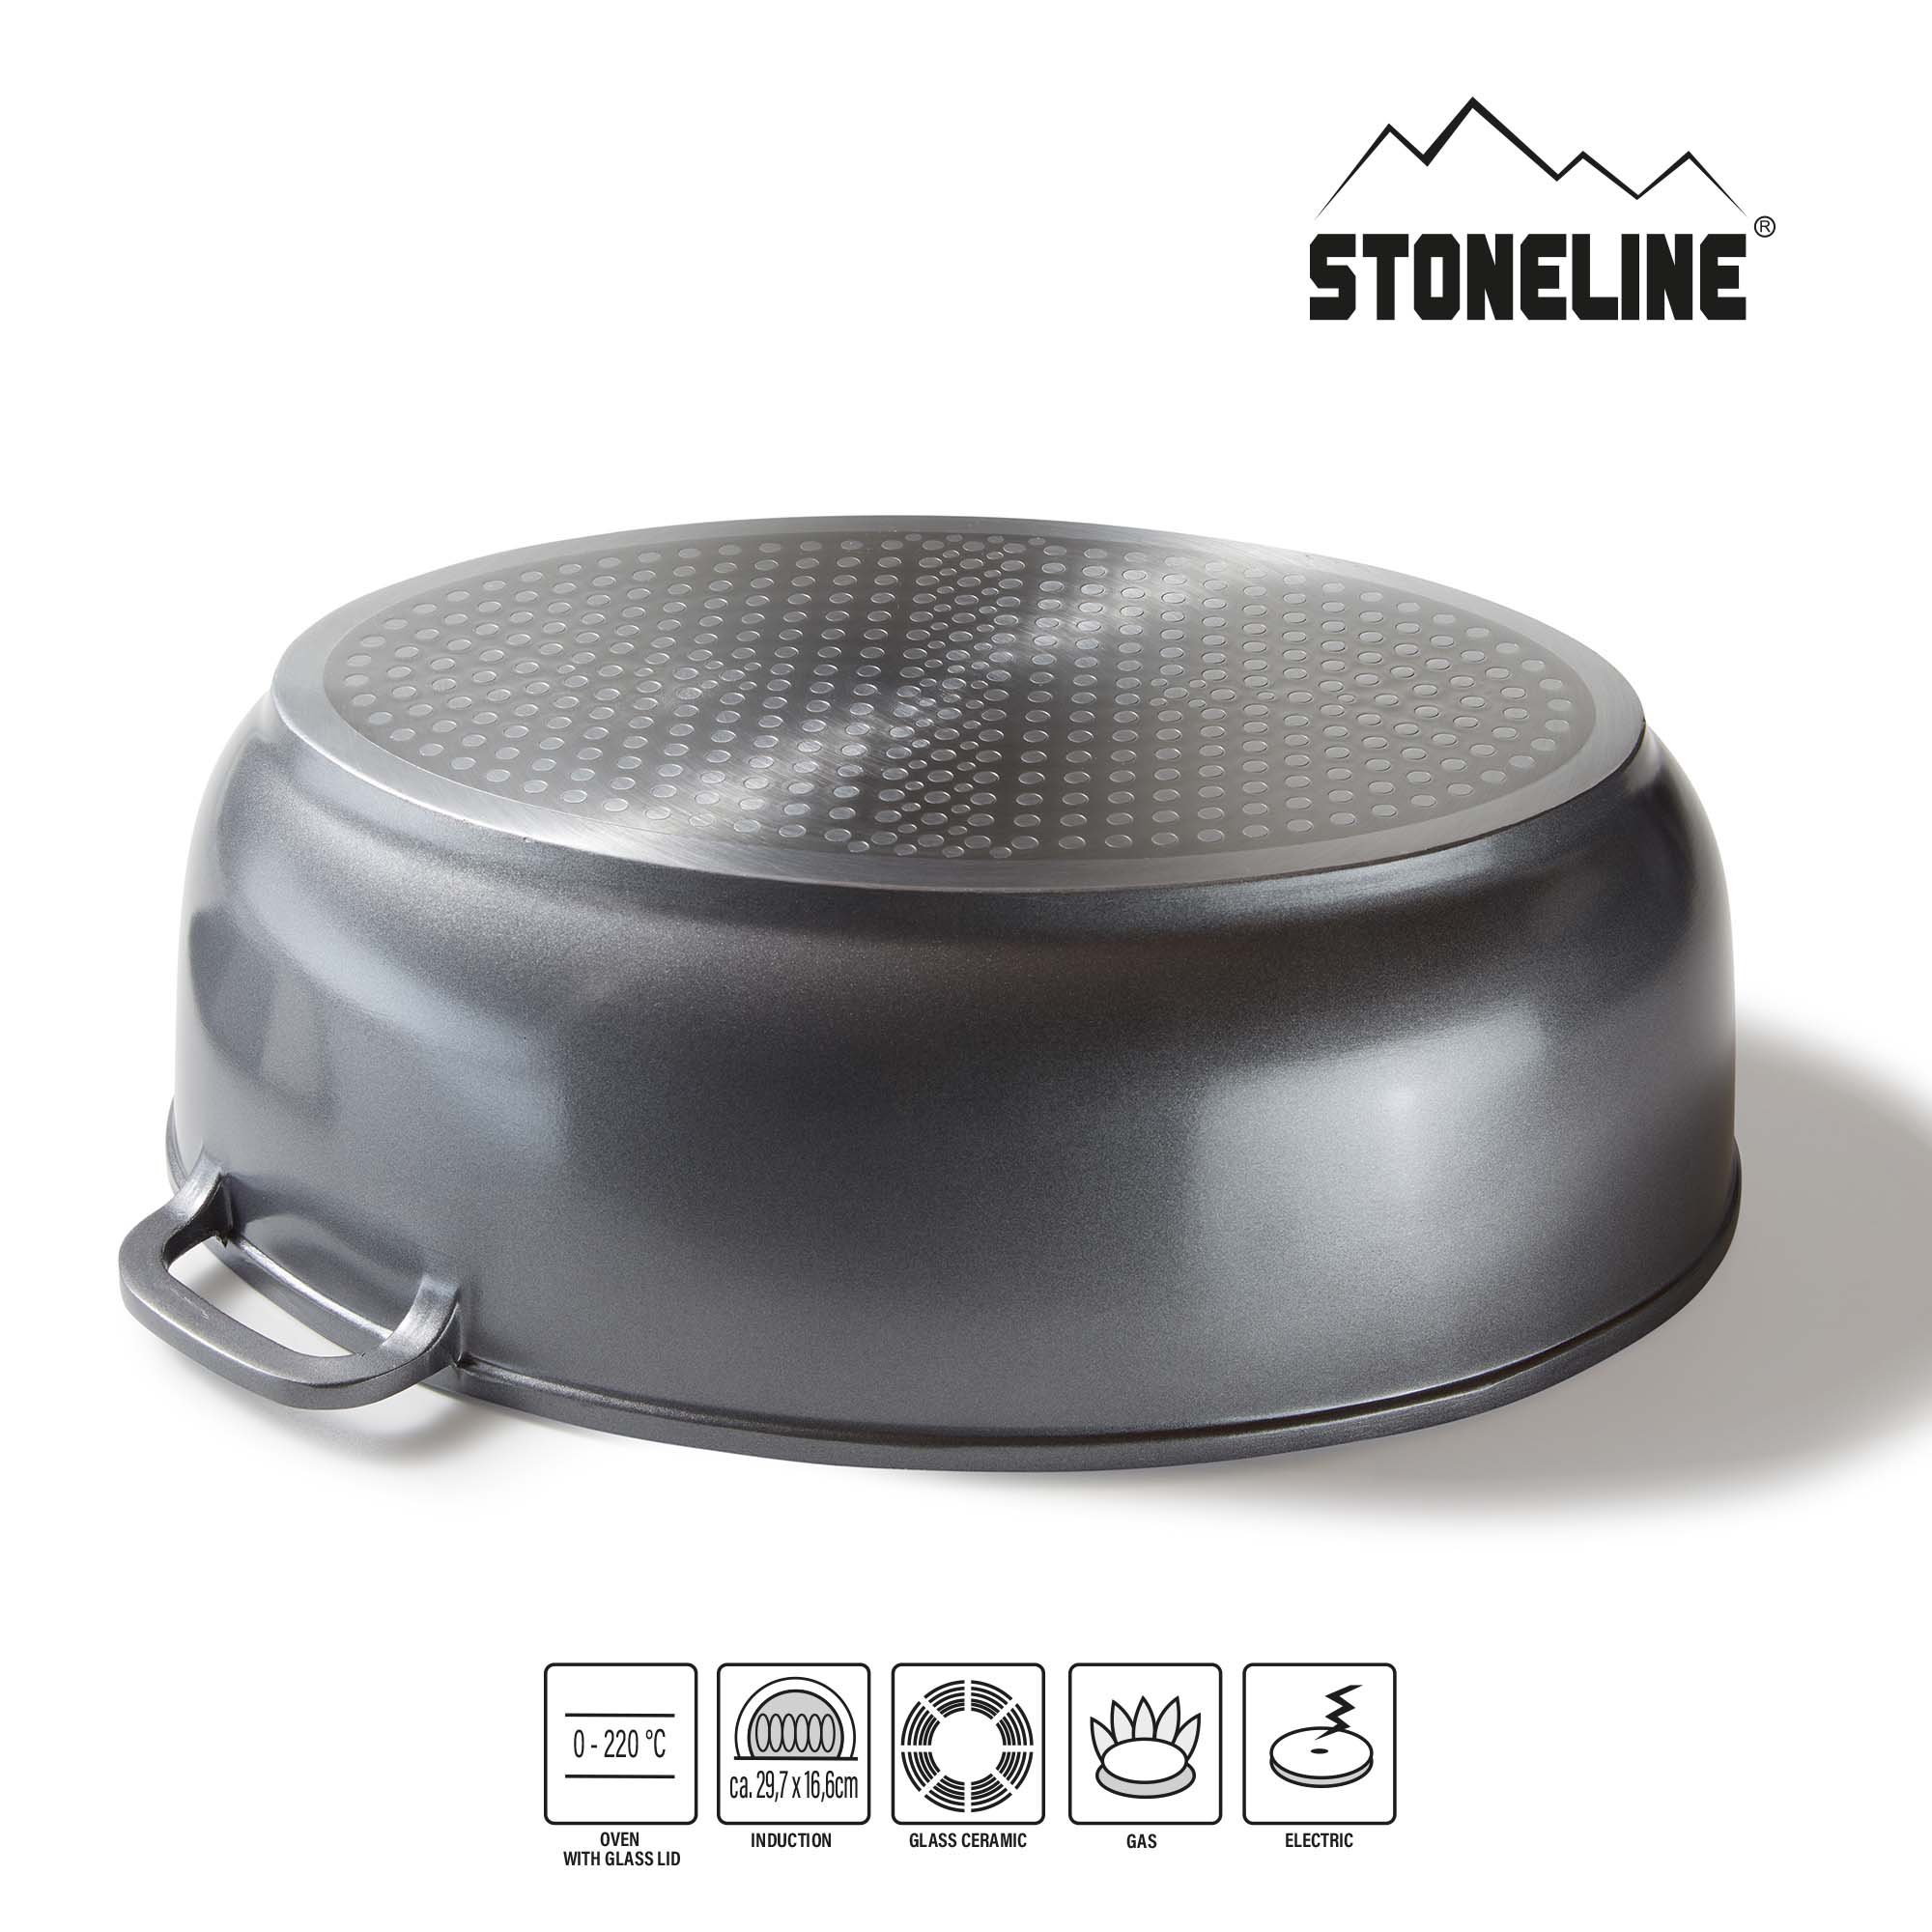 STONELINE® Gourmet asador 39 x 26 cm, con tapa de cristal aromático, apto para inducción y horno